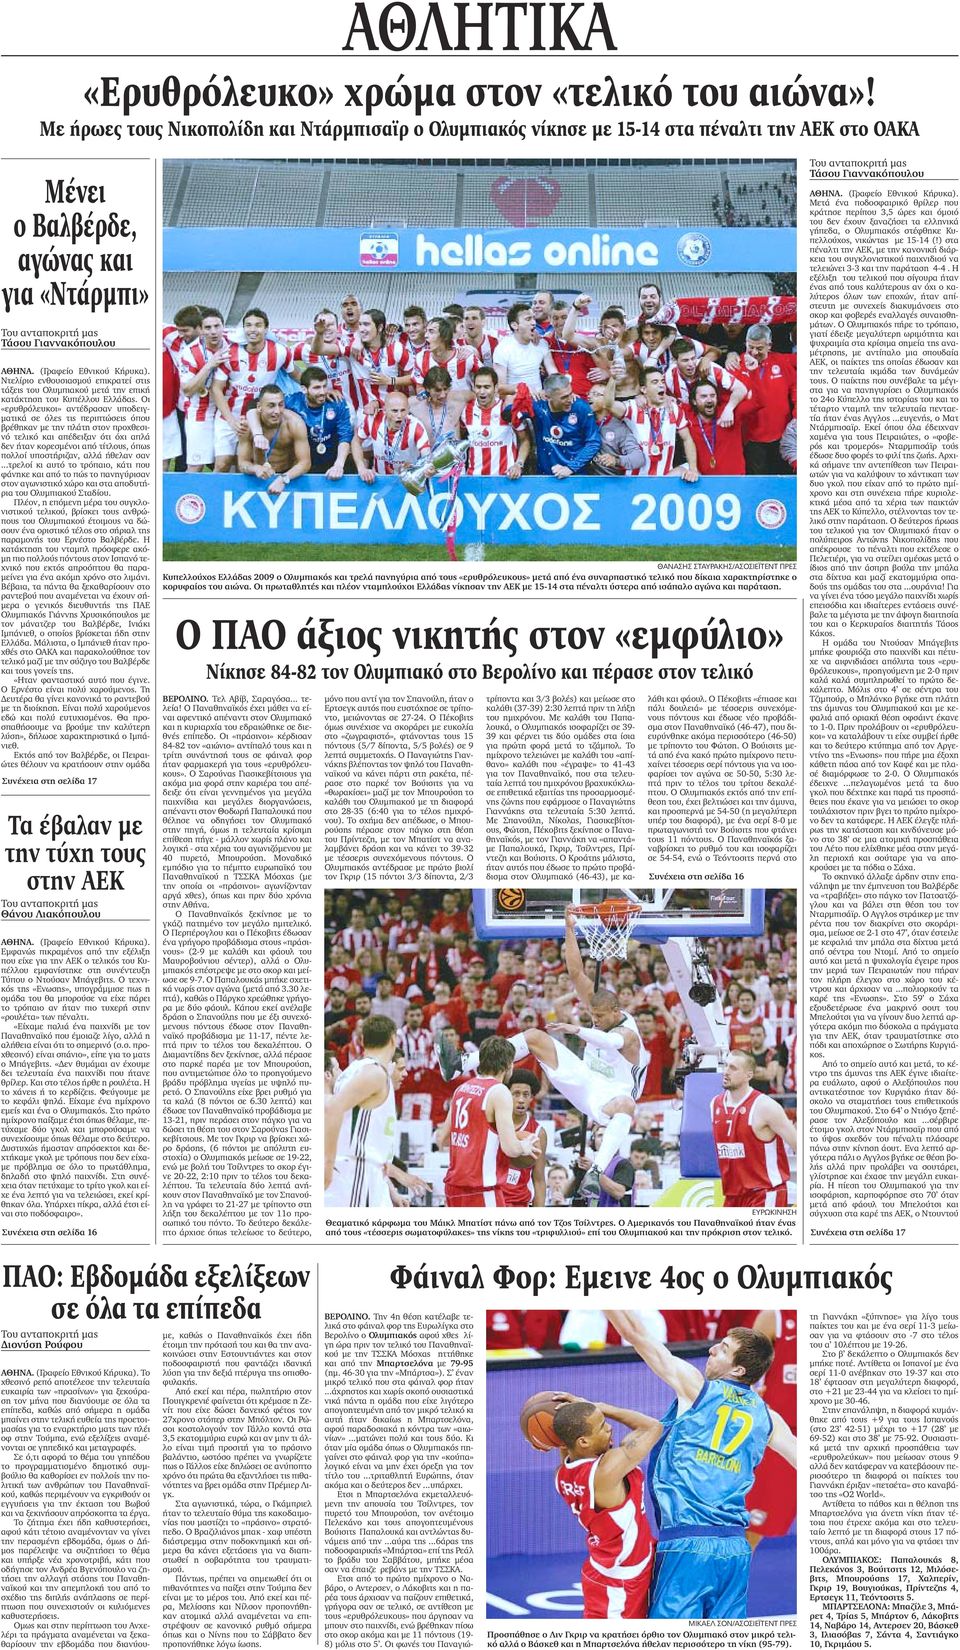 τάξεις του Ολυµπιακού µετά την επική κατάκτηση του Κυπέλλου Ελλάδας.